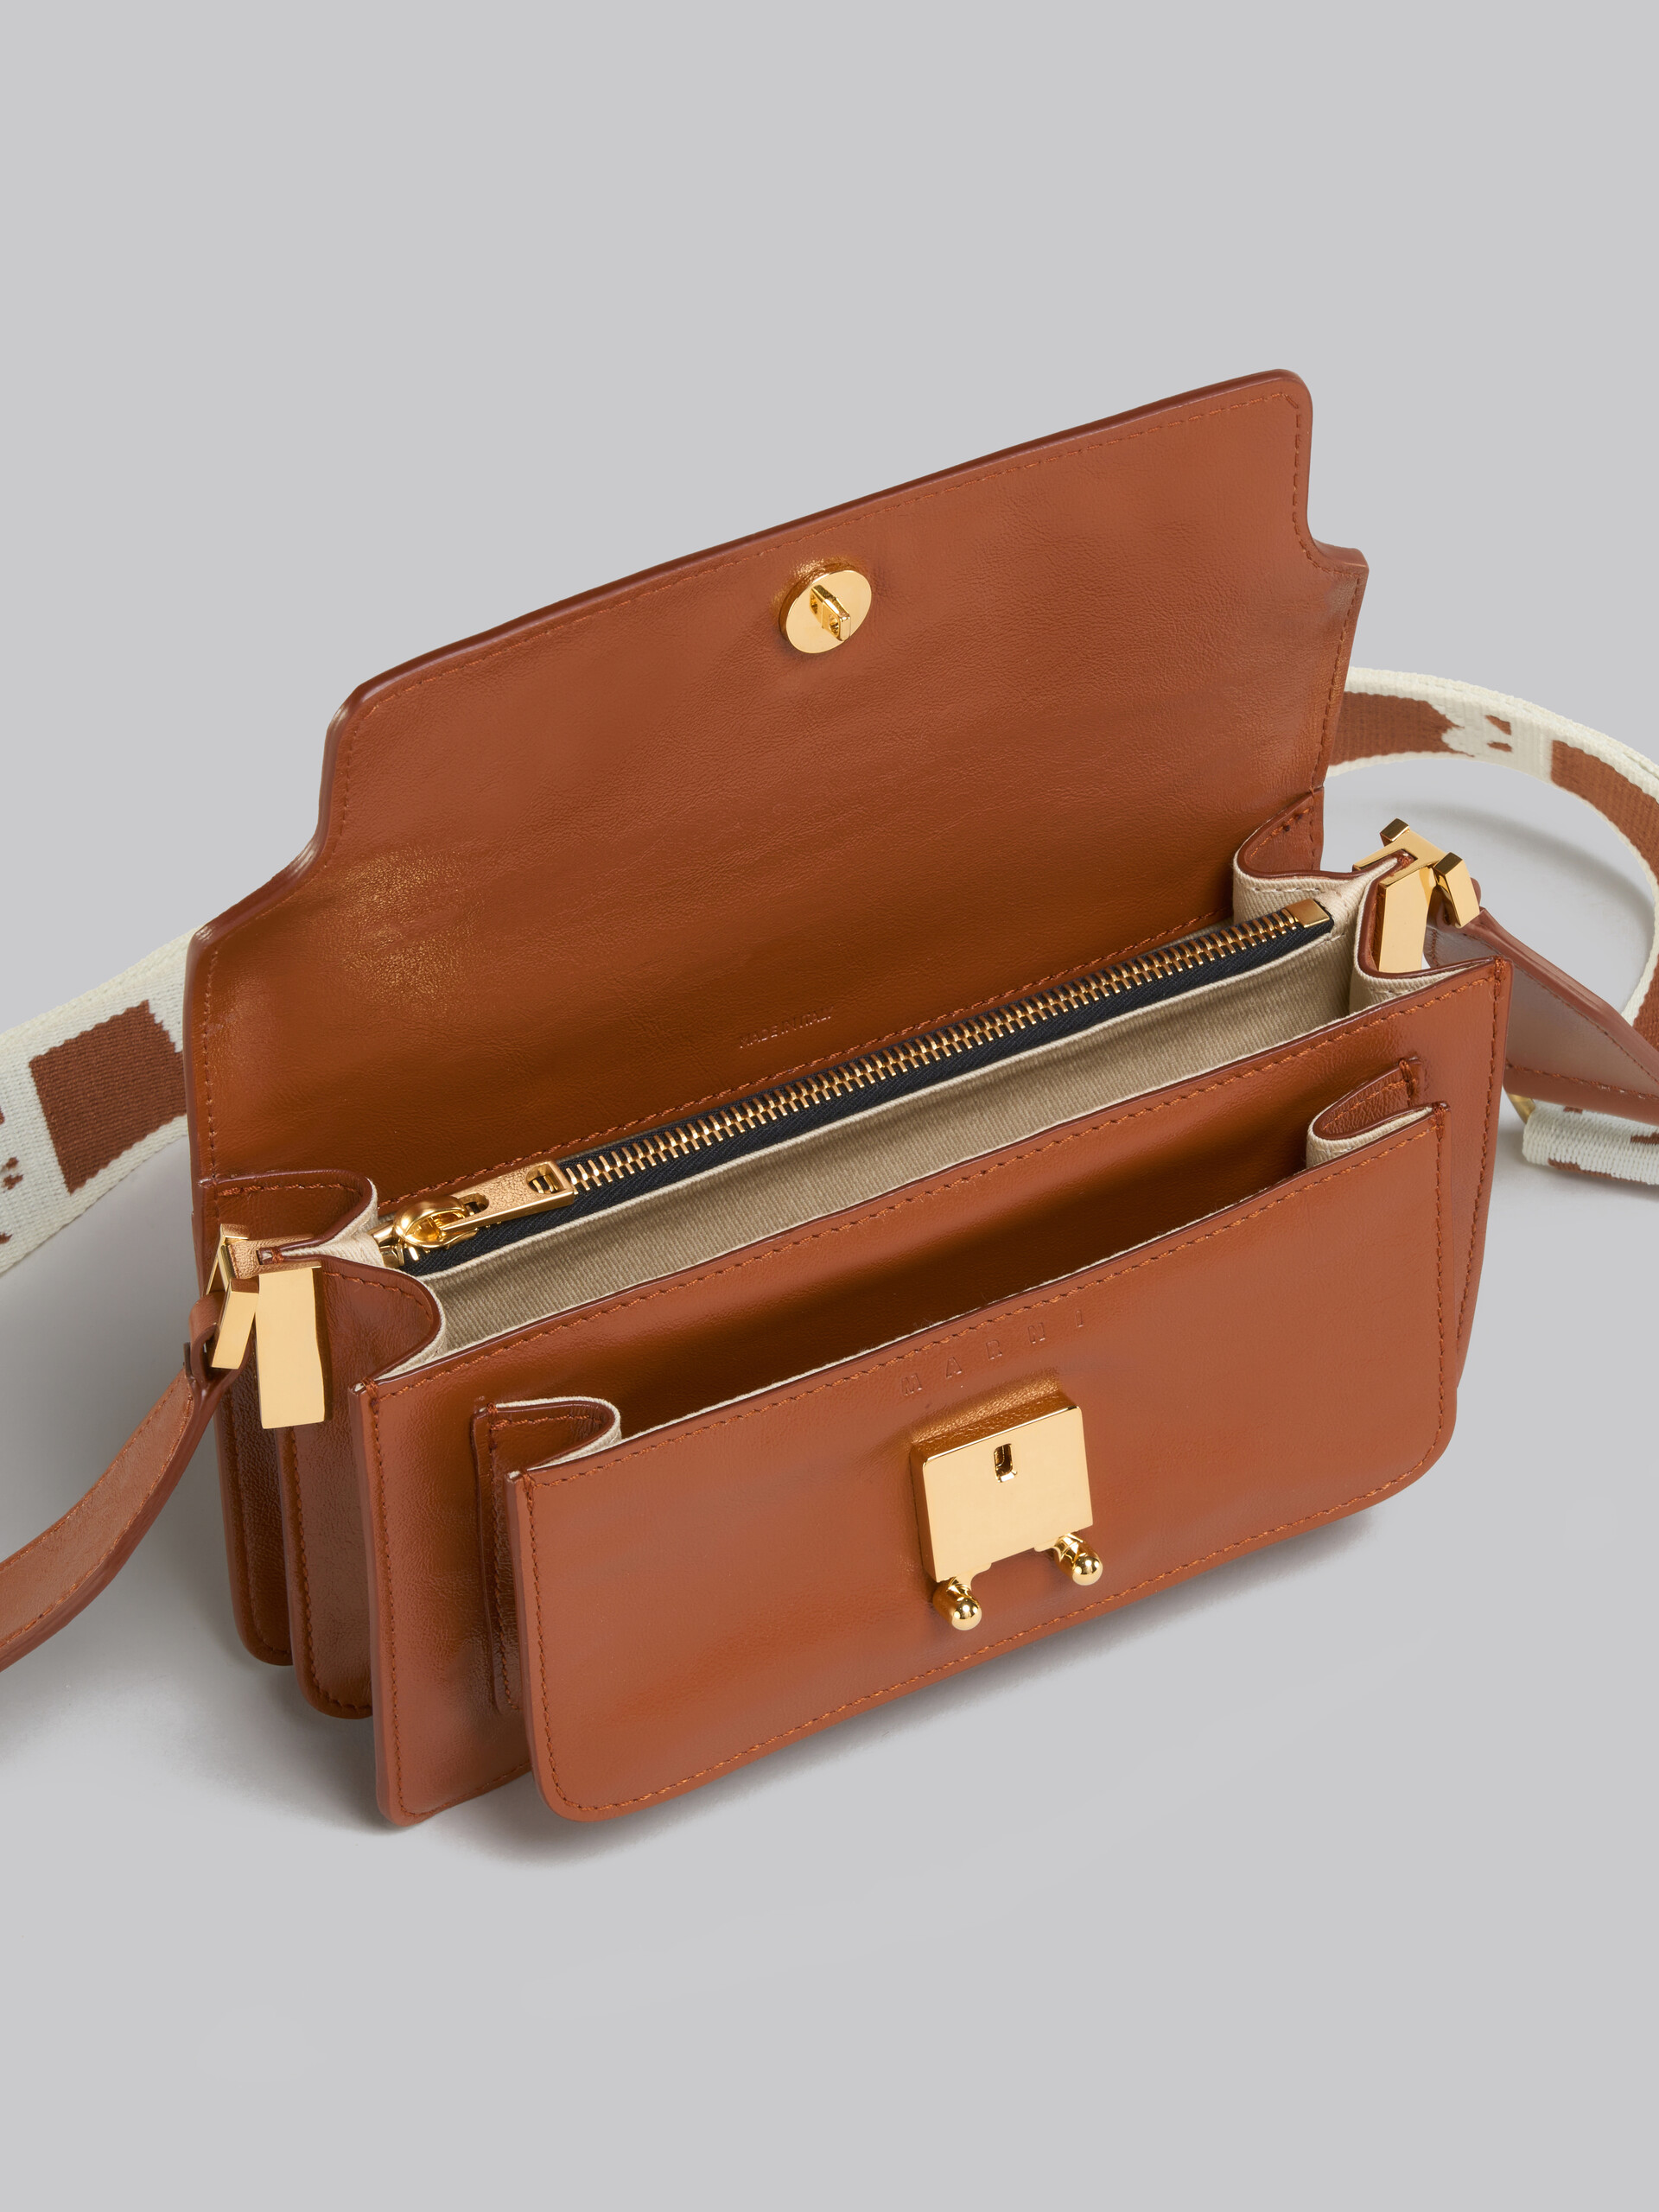 Trunk Soft Bag E/W in pelle marrone con tracolla logata - Borse a spalla - Image 4